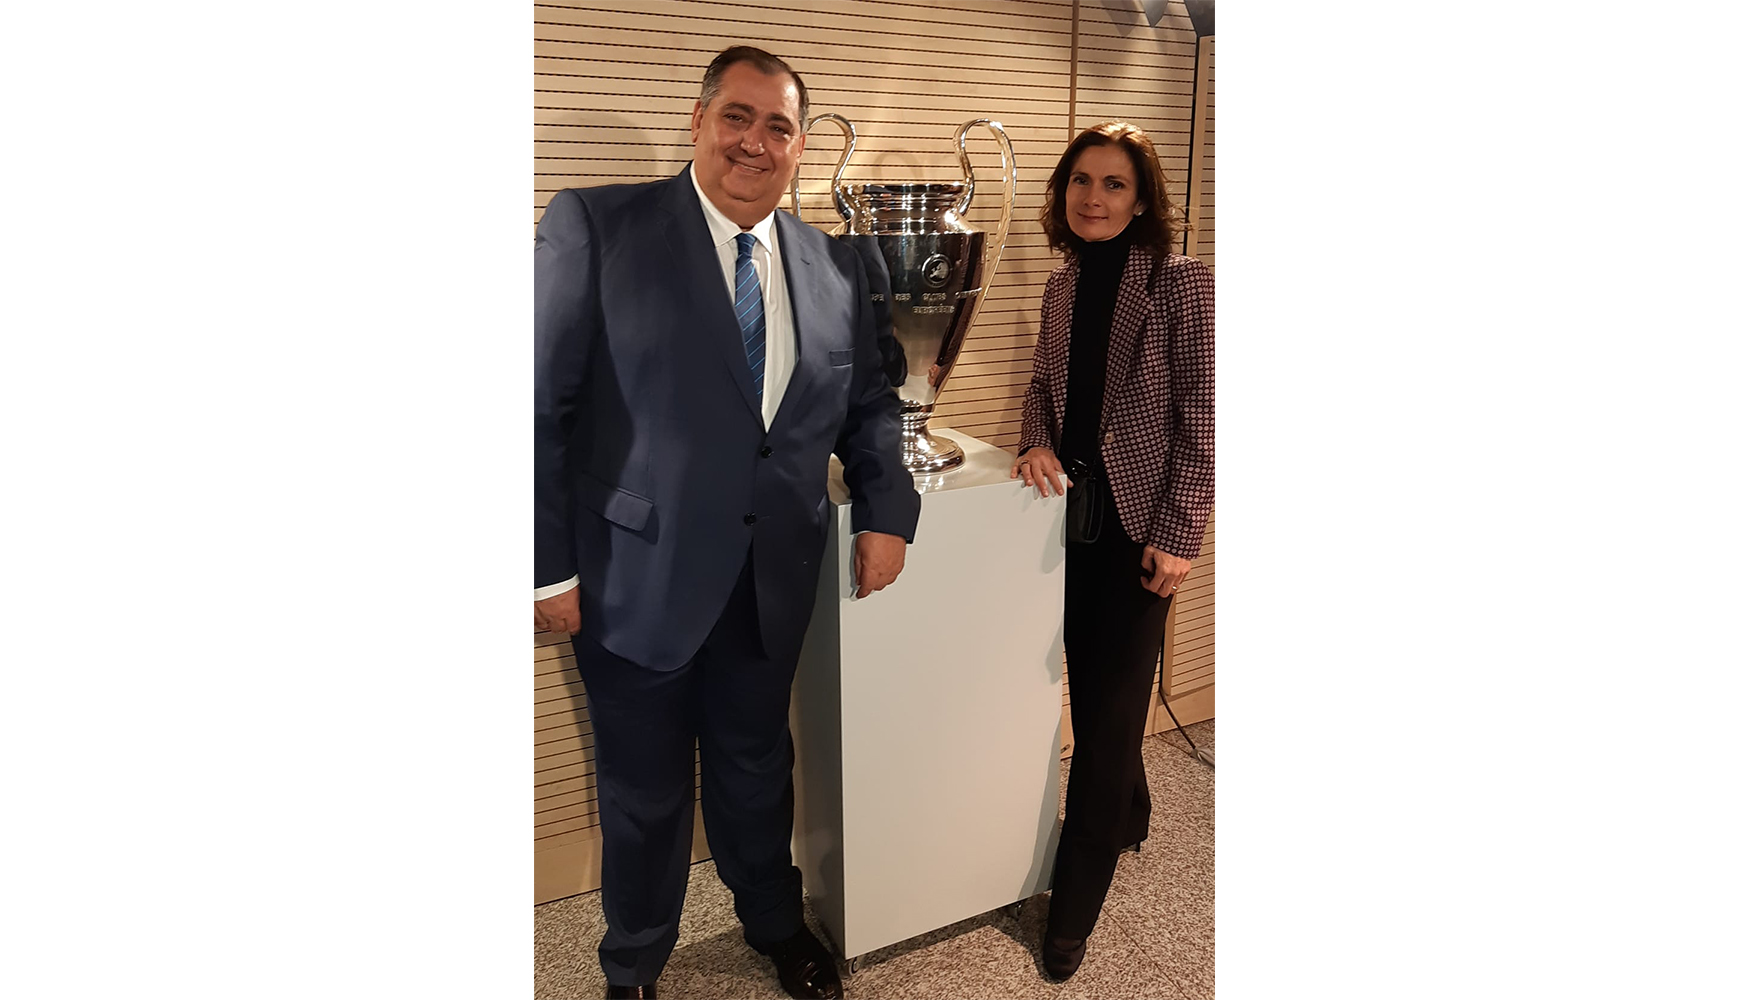 Antonio, acompaado de Cristina Bartolom, junto a una de las ltimas Copa de Europa ganada por el Real Madrid, una de sus grandes pasiones...